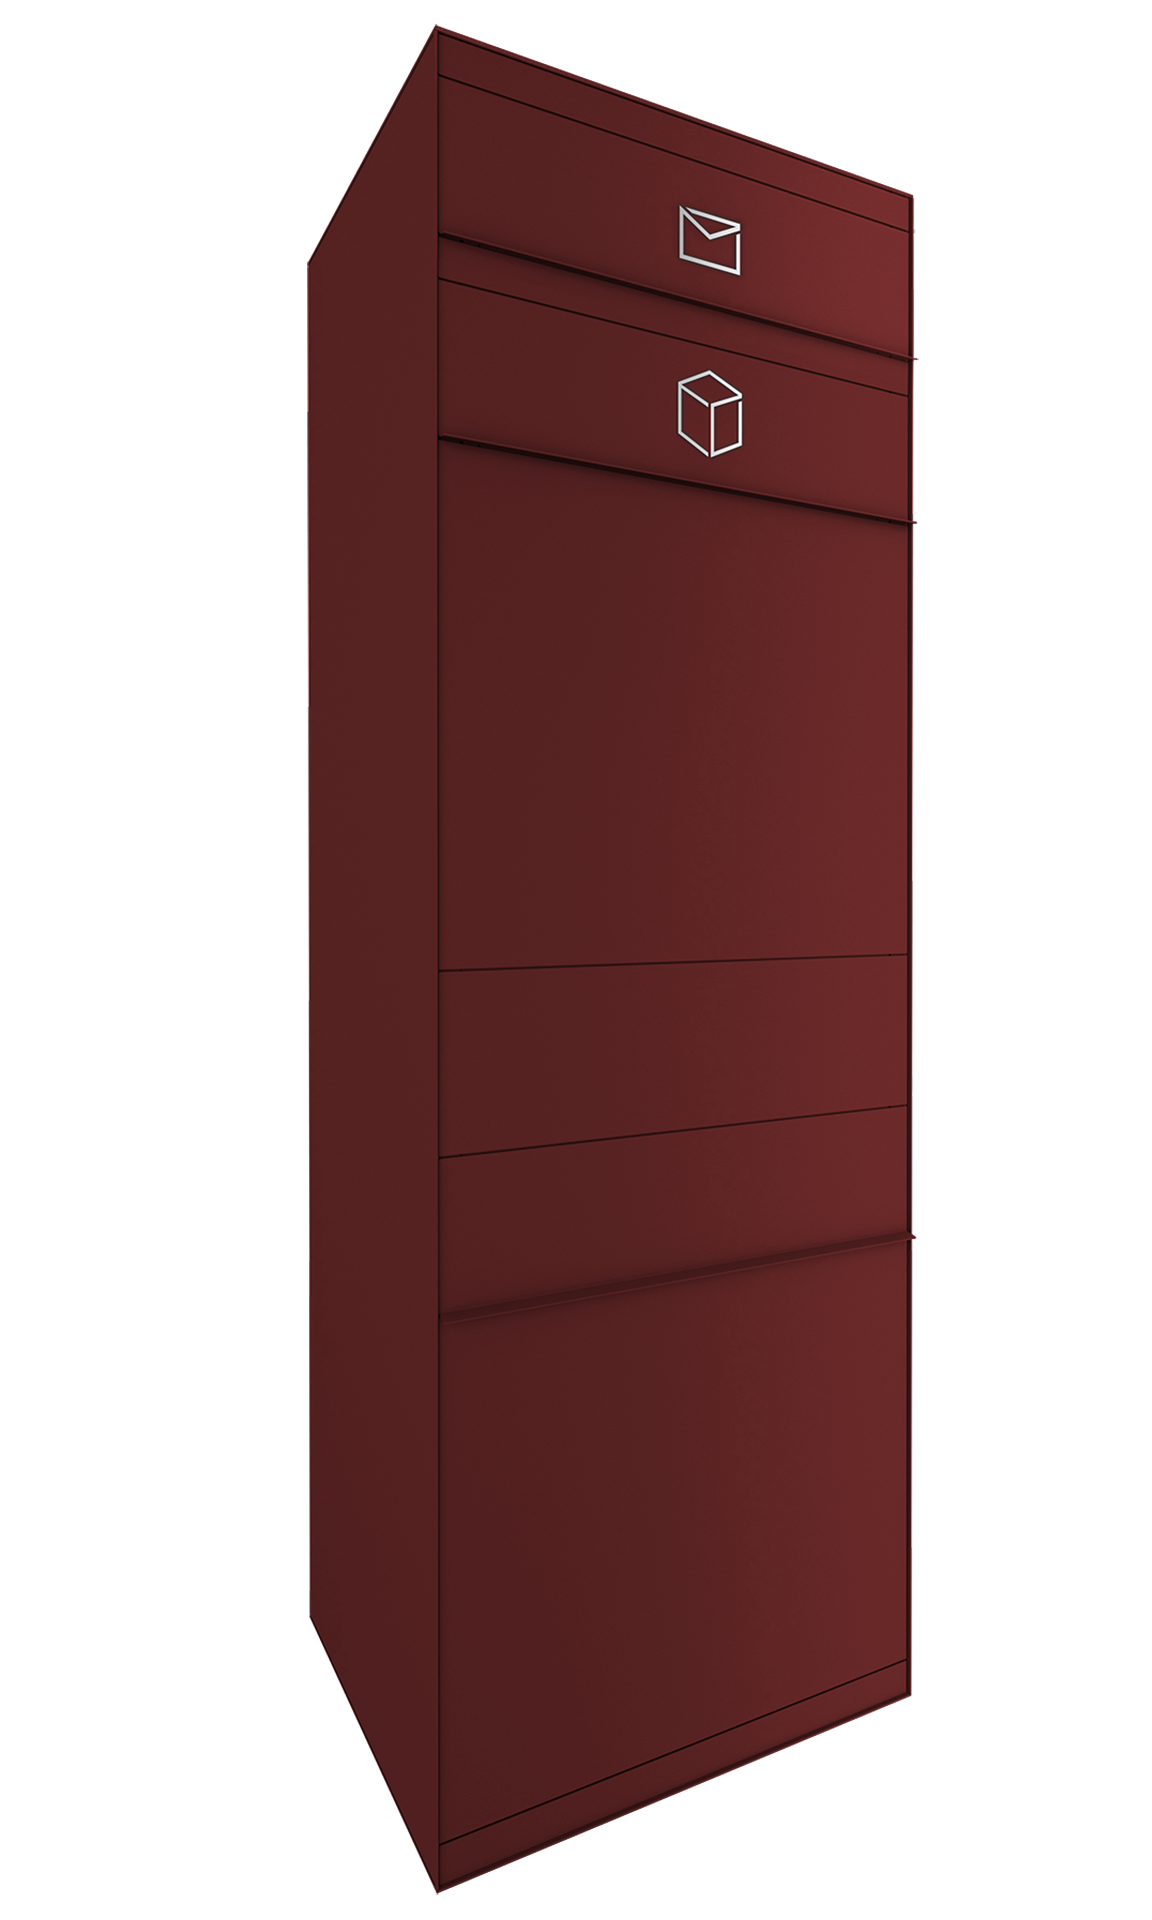 Paketbox mit Briefkasten in Wunschfarbe